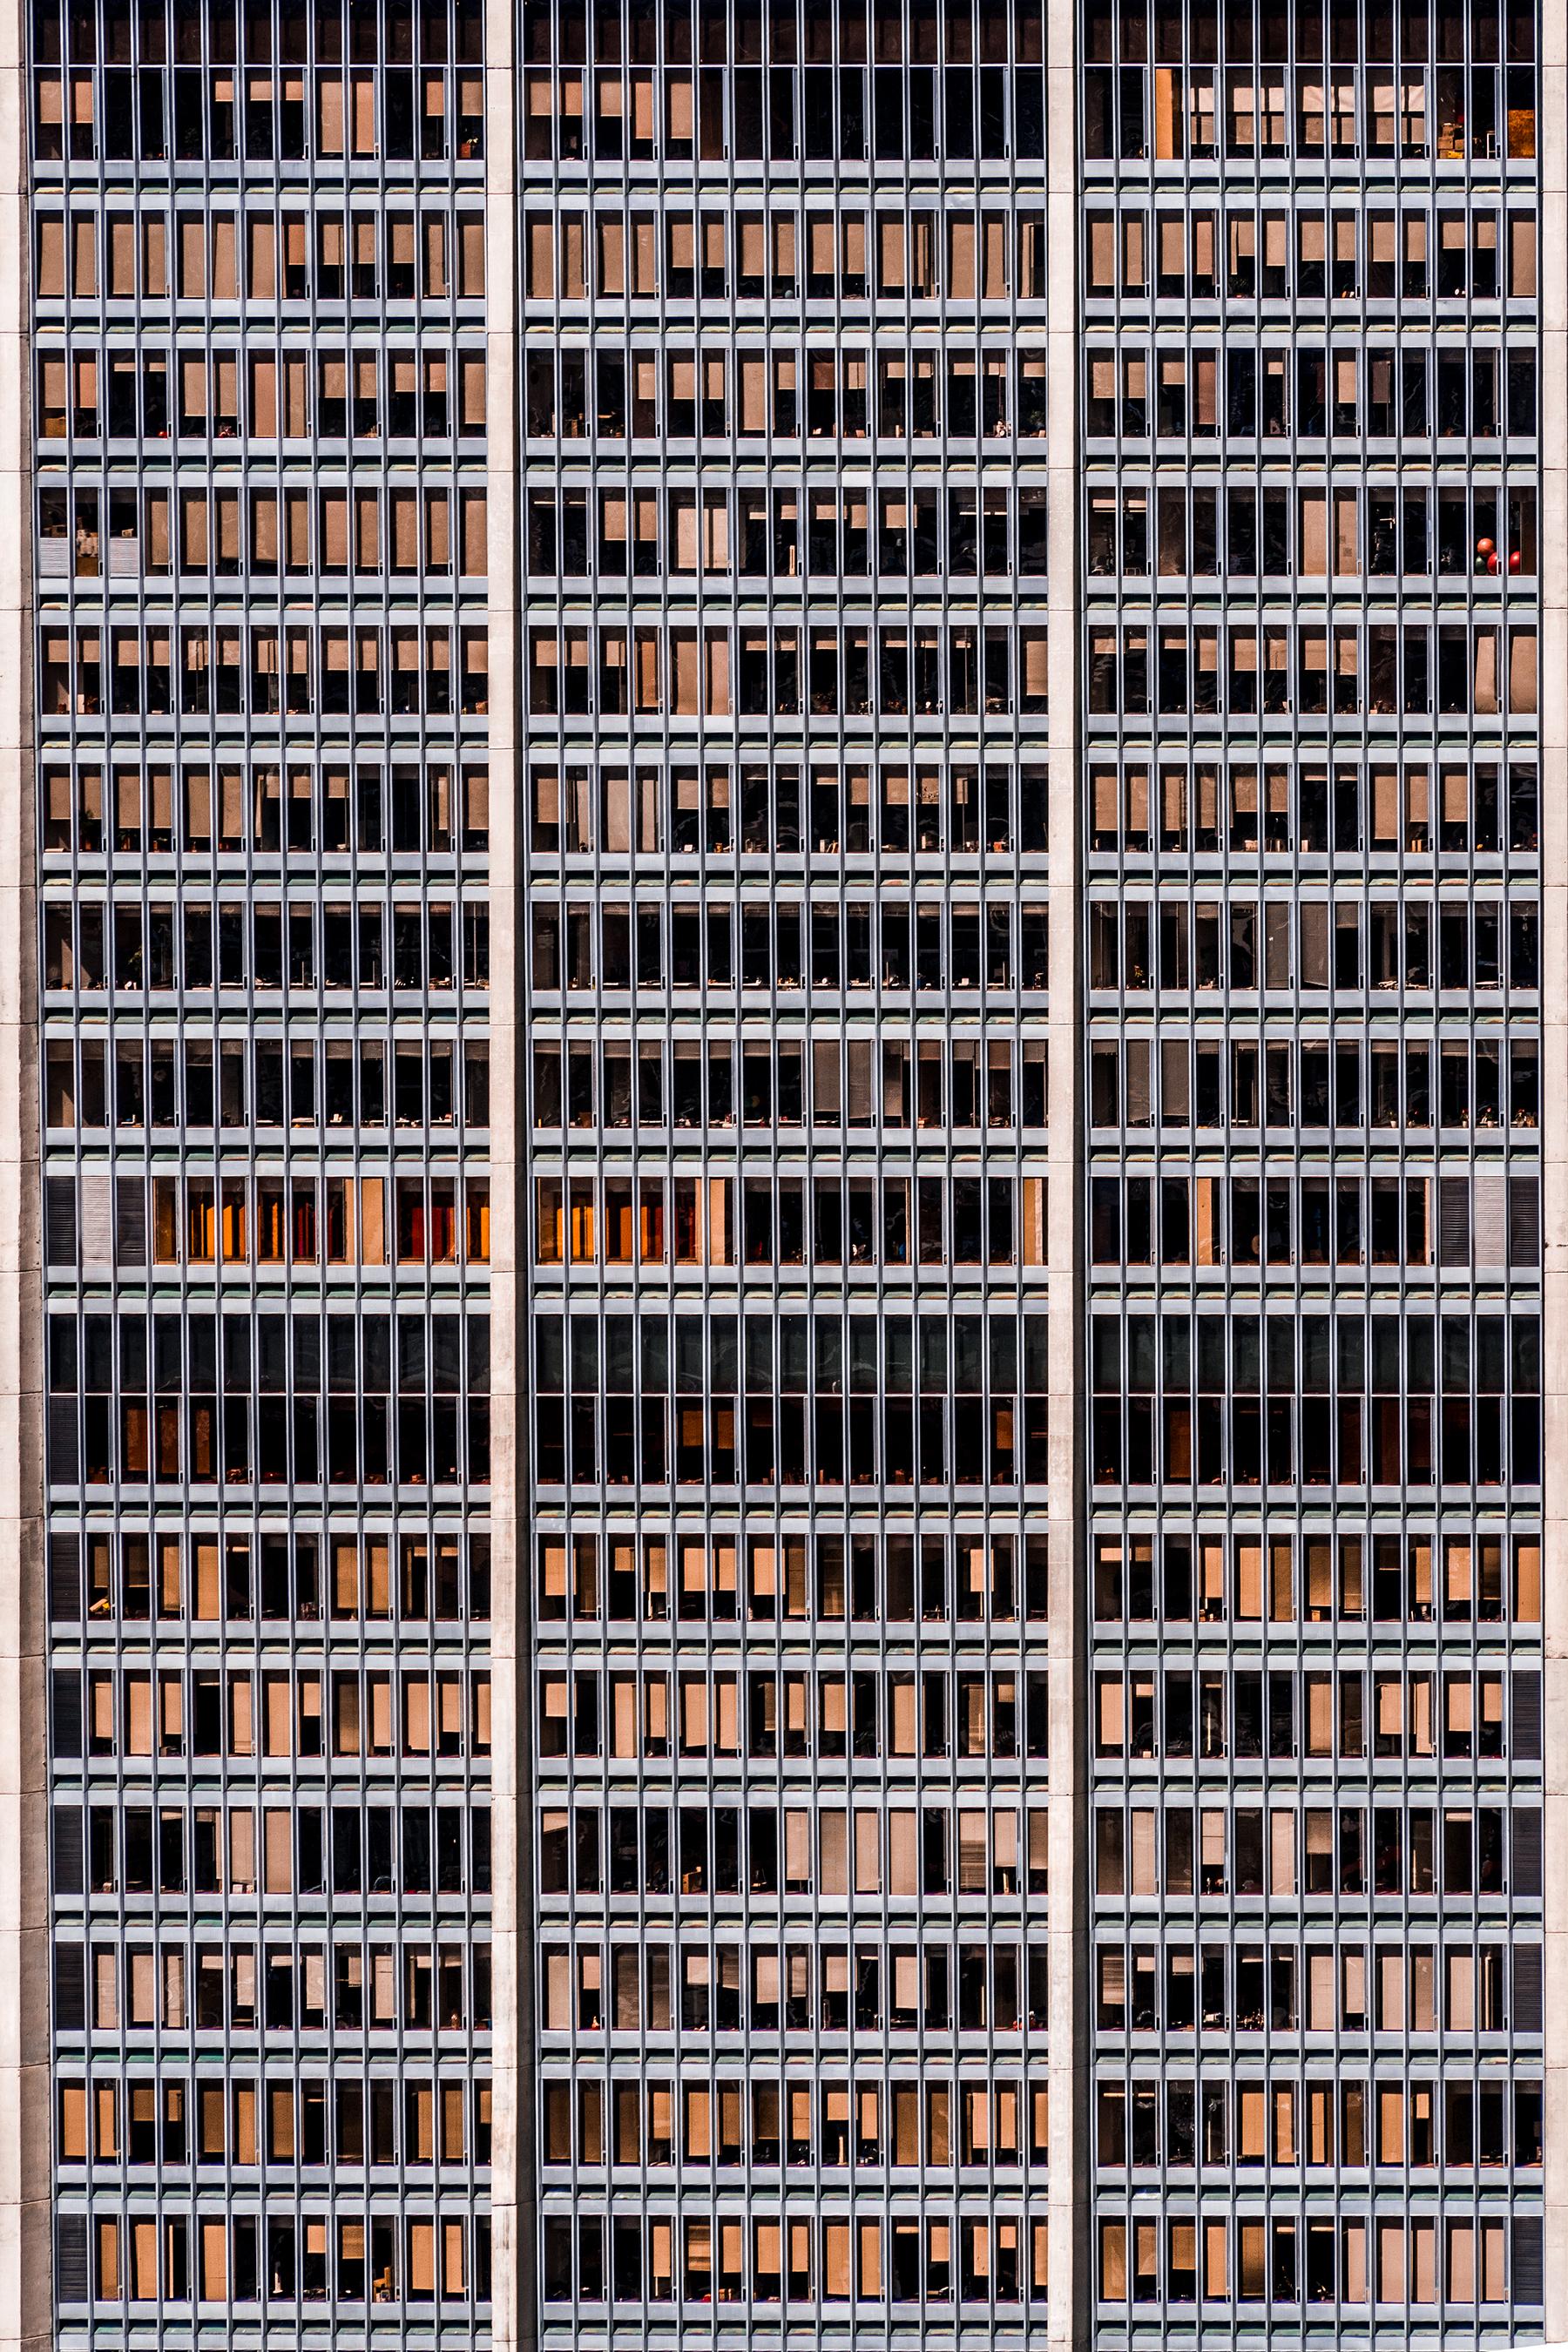 Javier Rey Landscape Photograph - 1004 Windows. Abstract architectural  landscape color photograph 